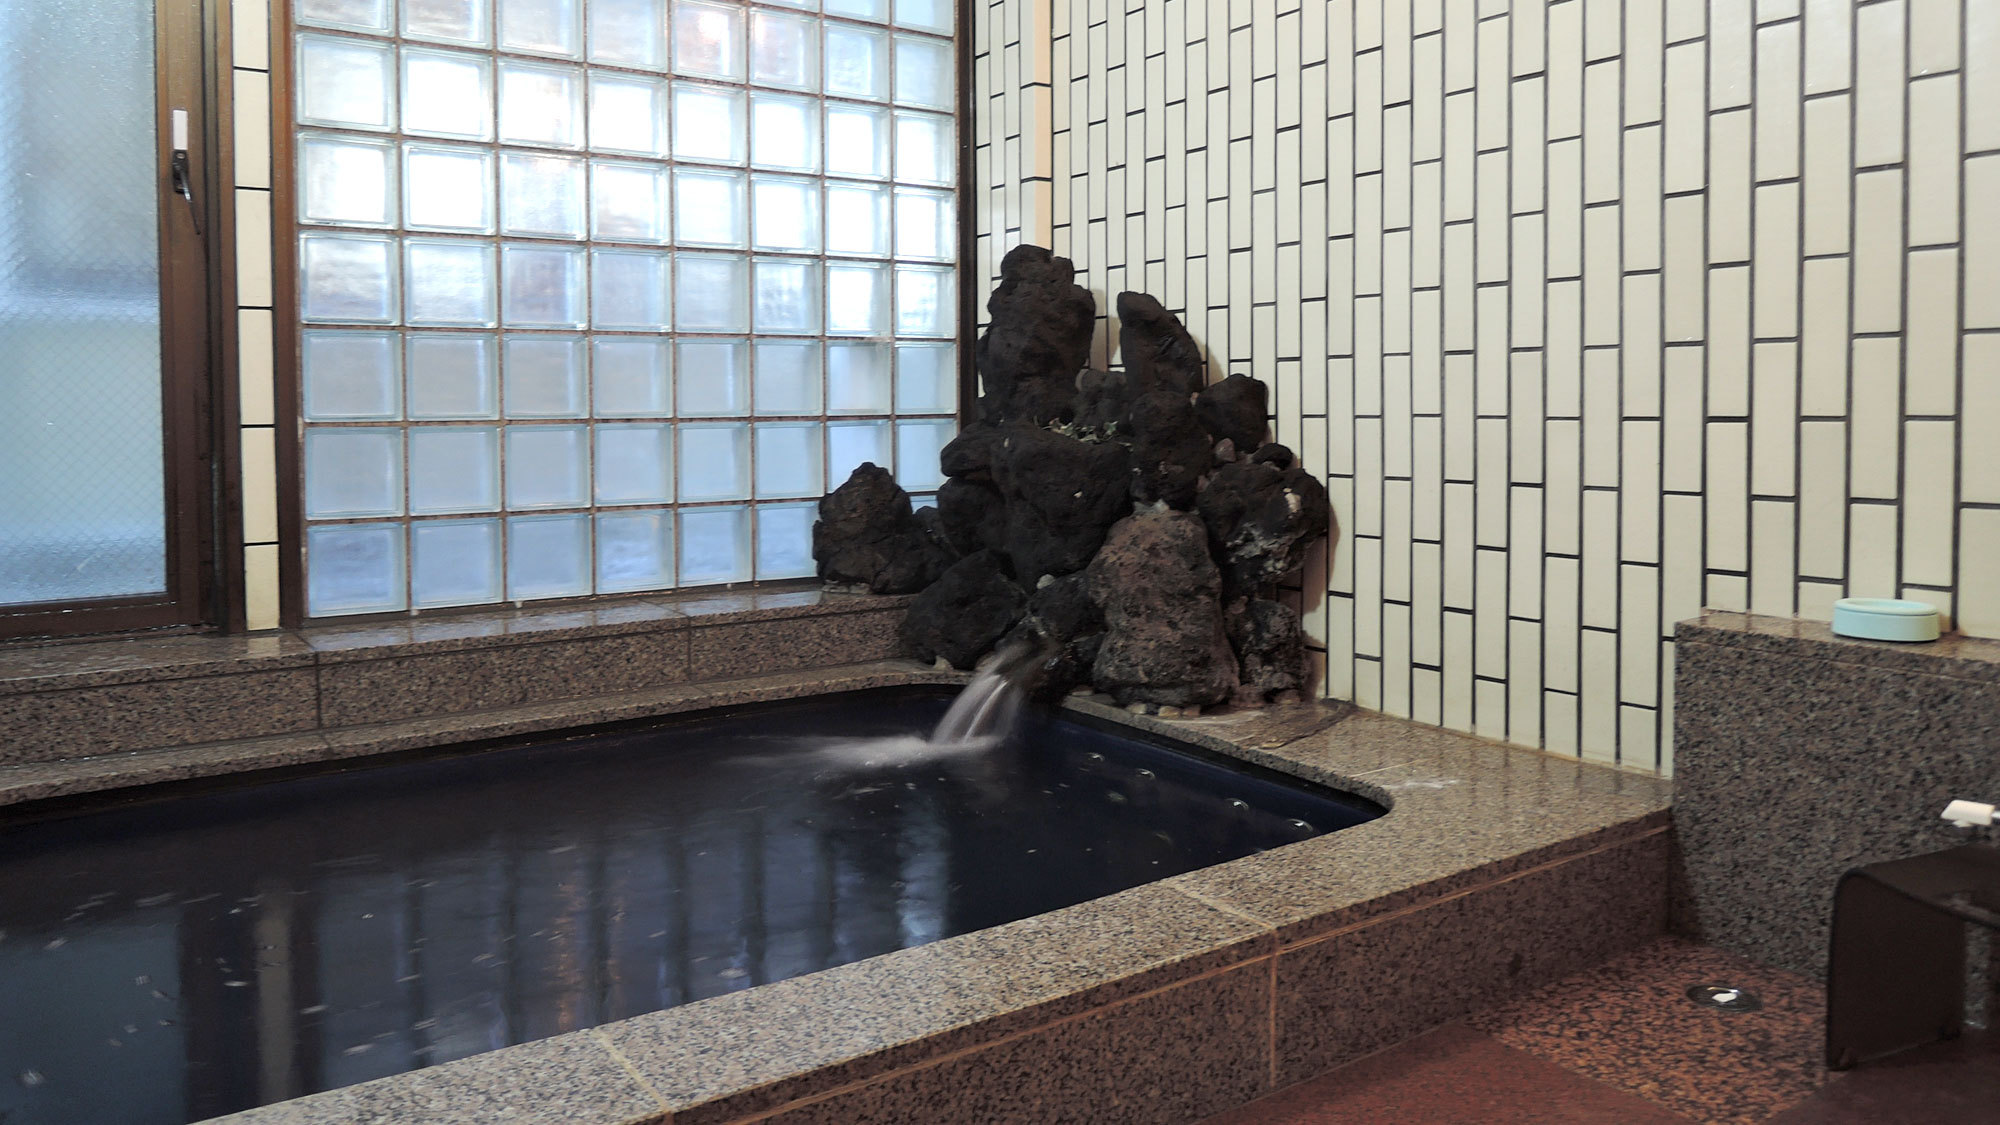 *【温泉】「信州高遠温泉」は秋には当館名物の「マツタケ風呂」をお楽しみ頂けます。